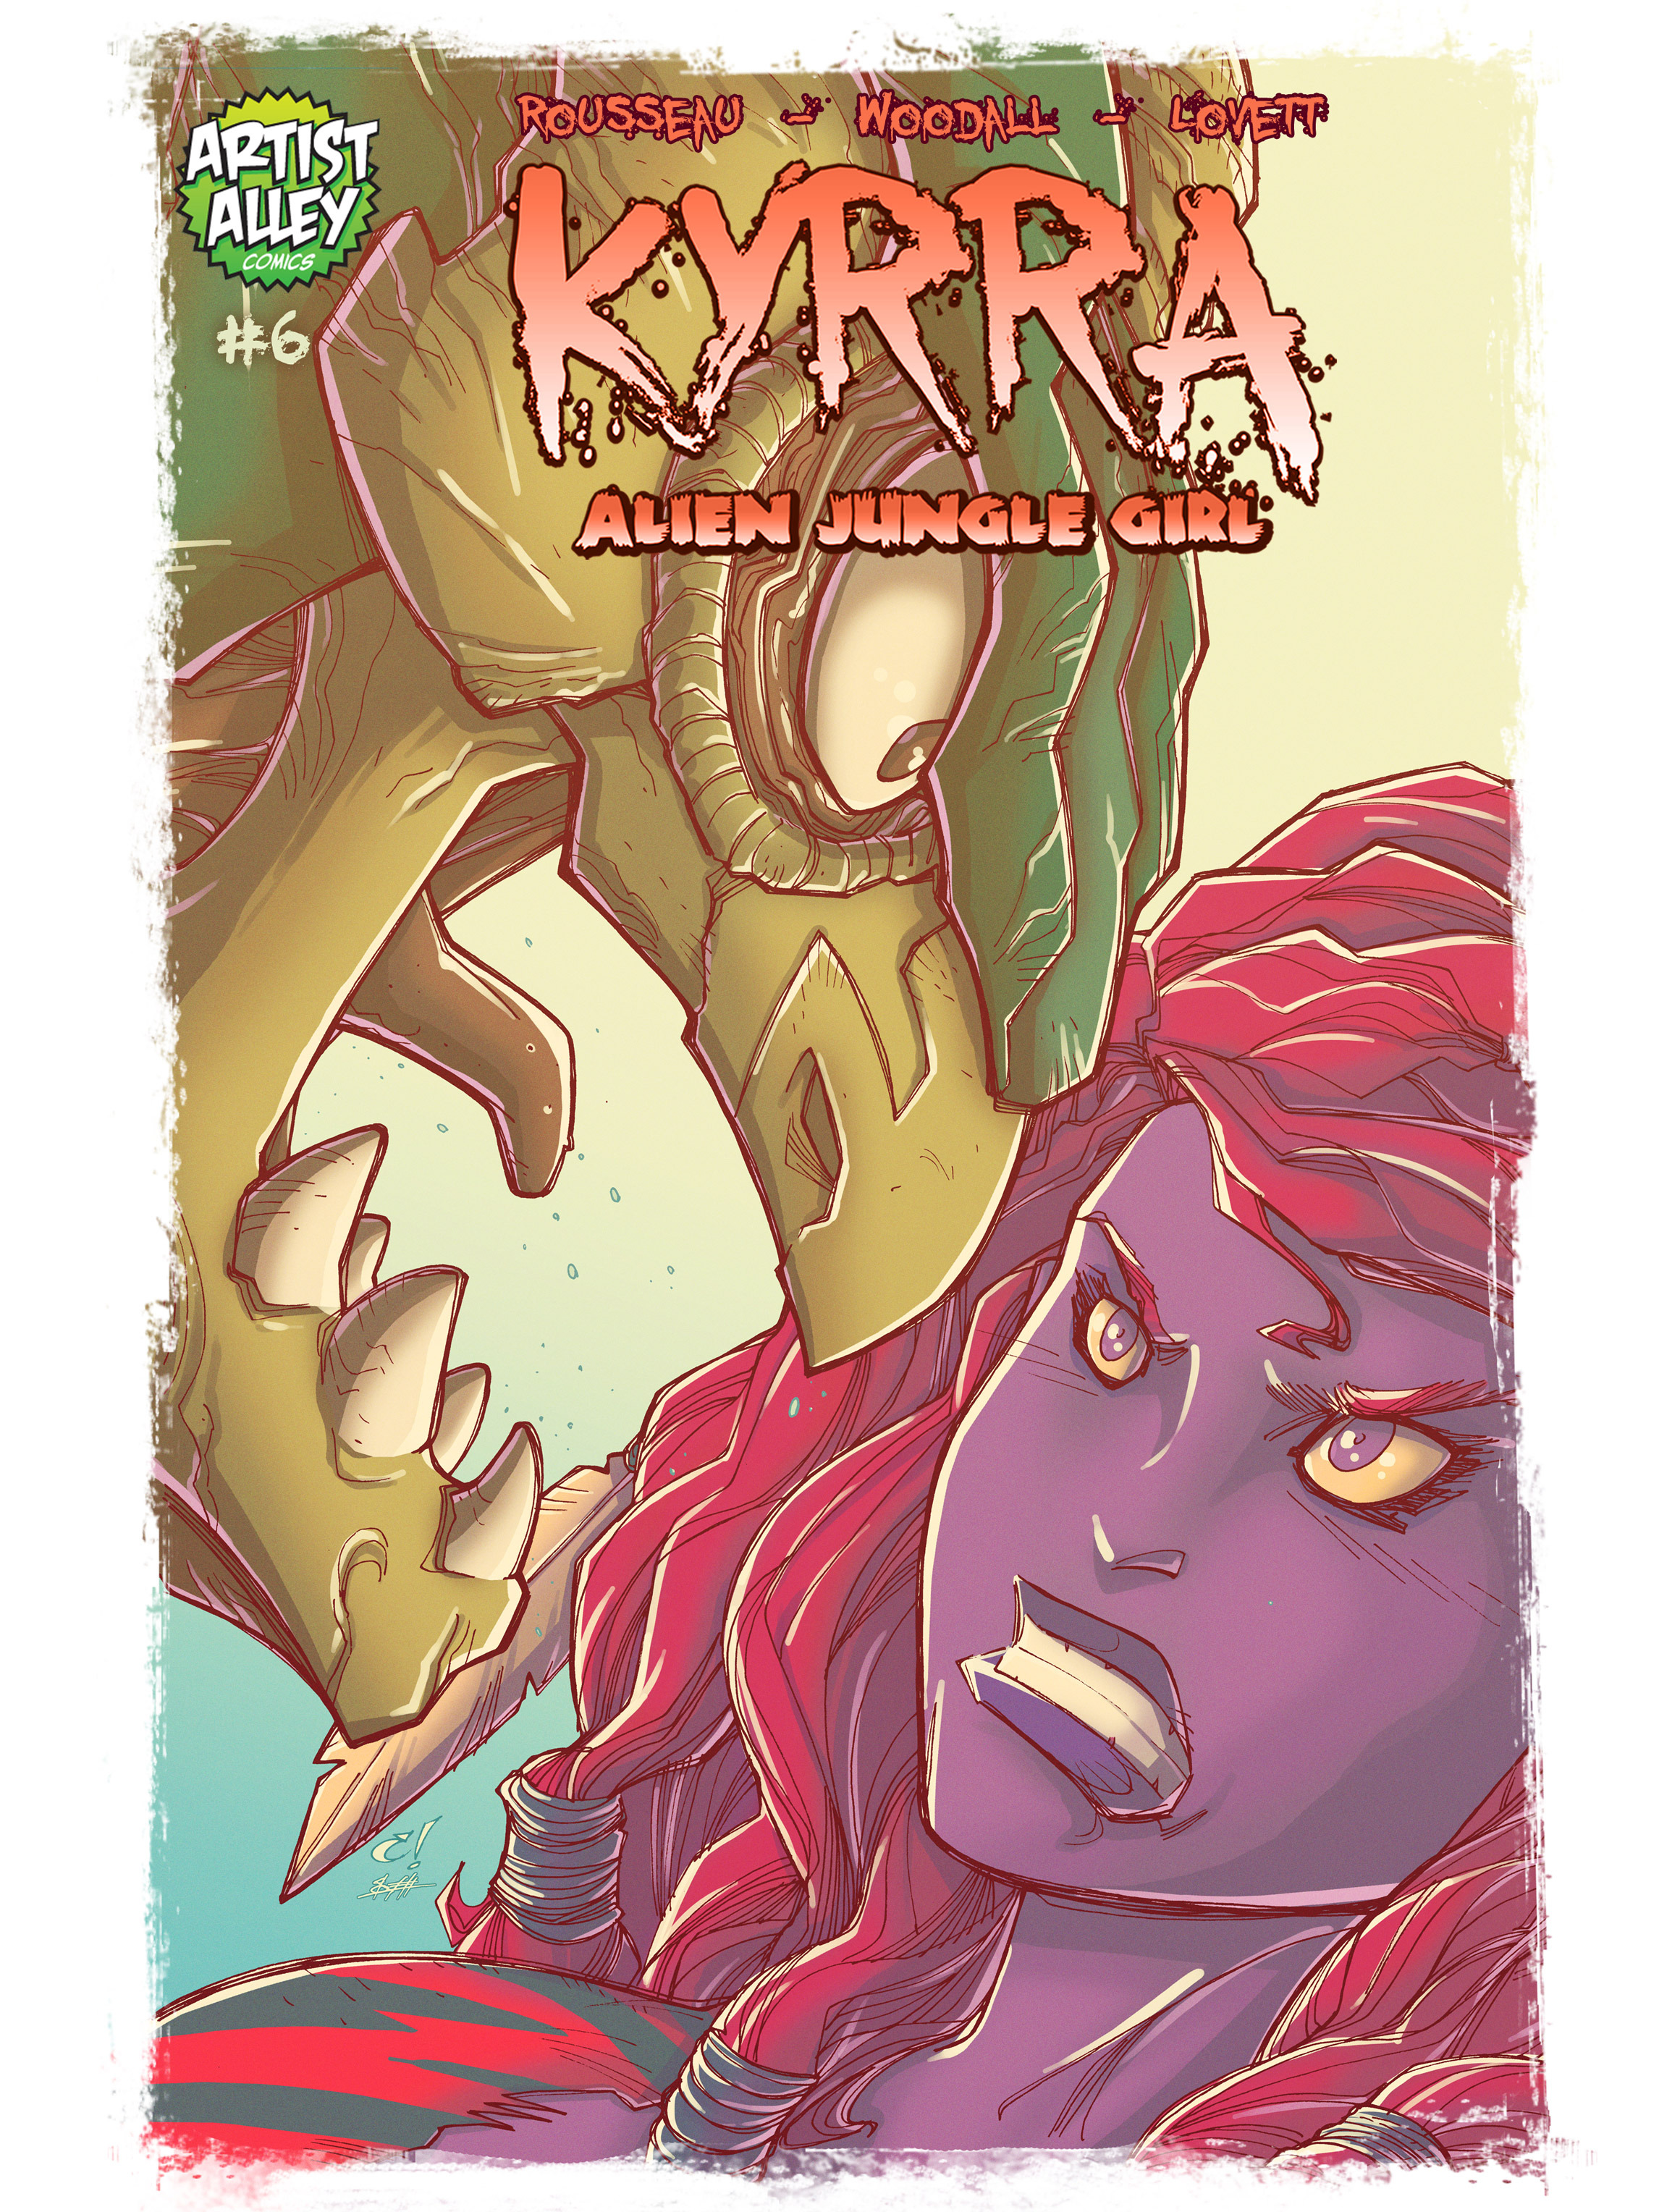 Read online Kyrra: Alien Jungle Girl comic -  Issue #6 - 1